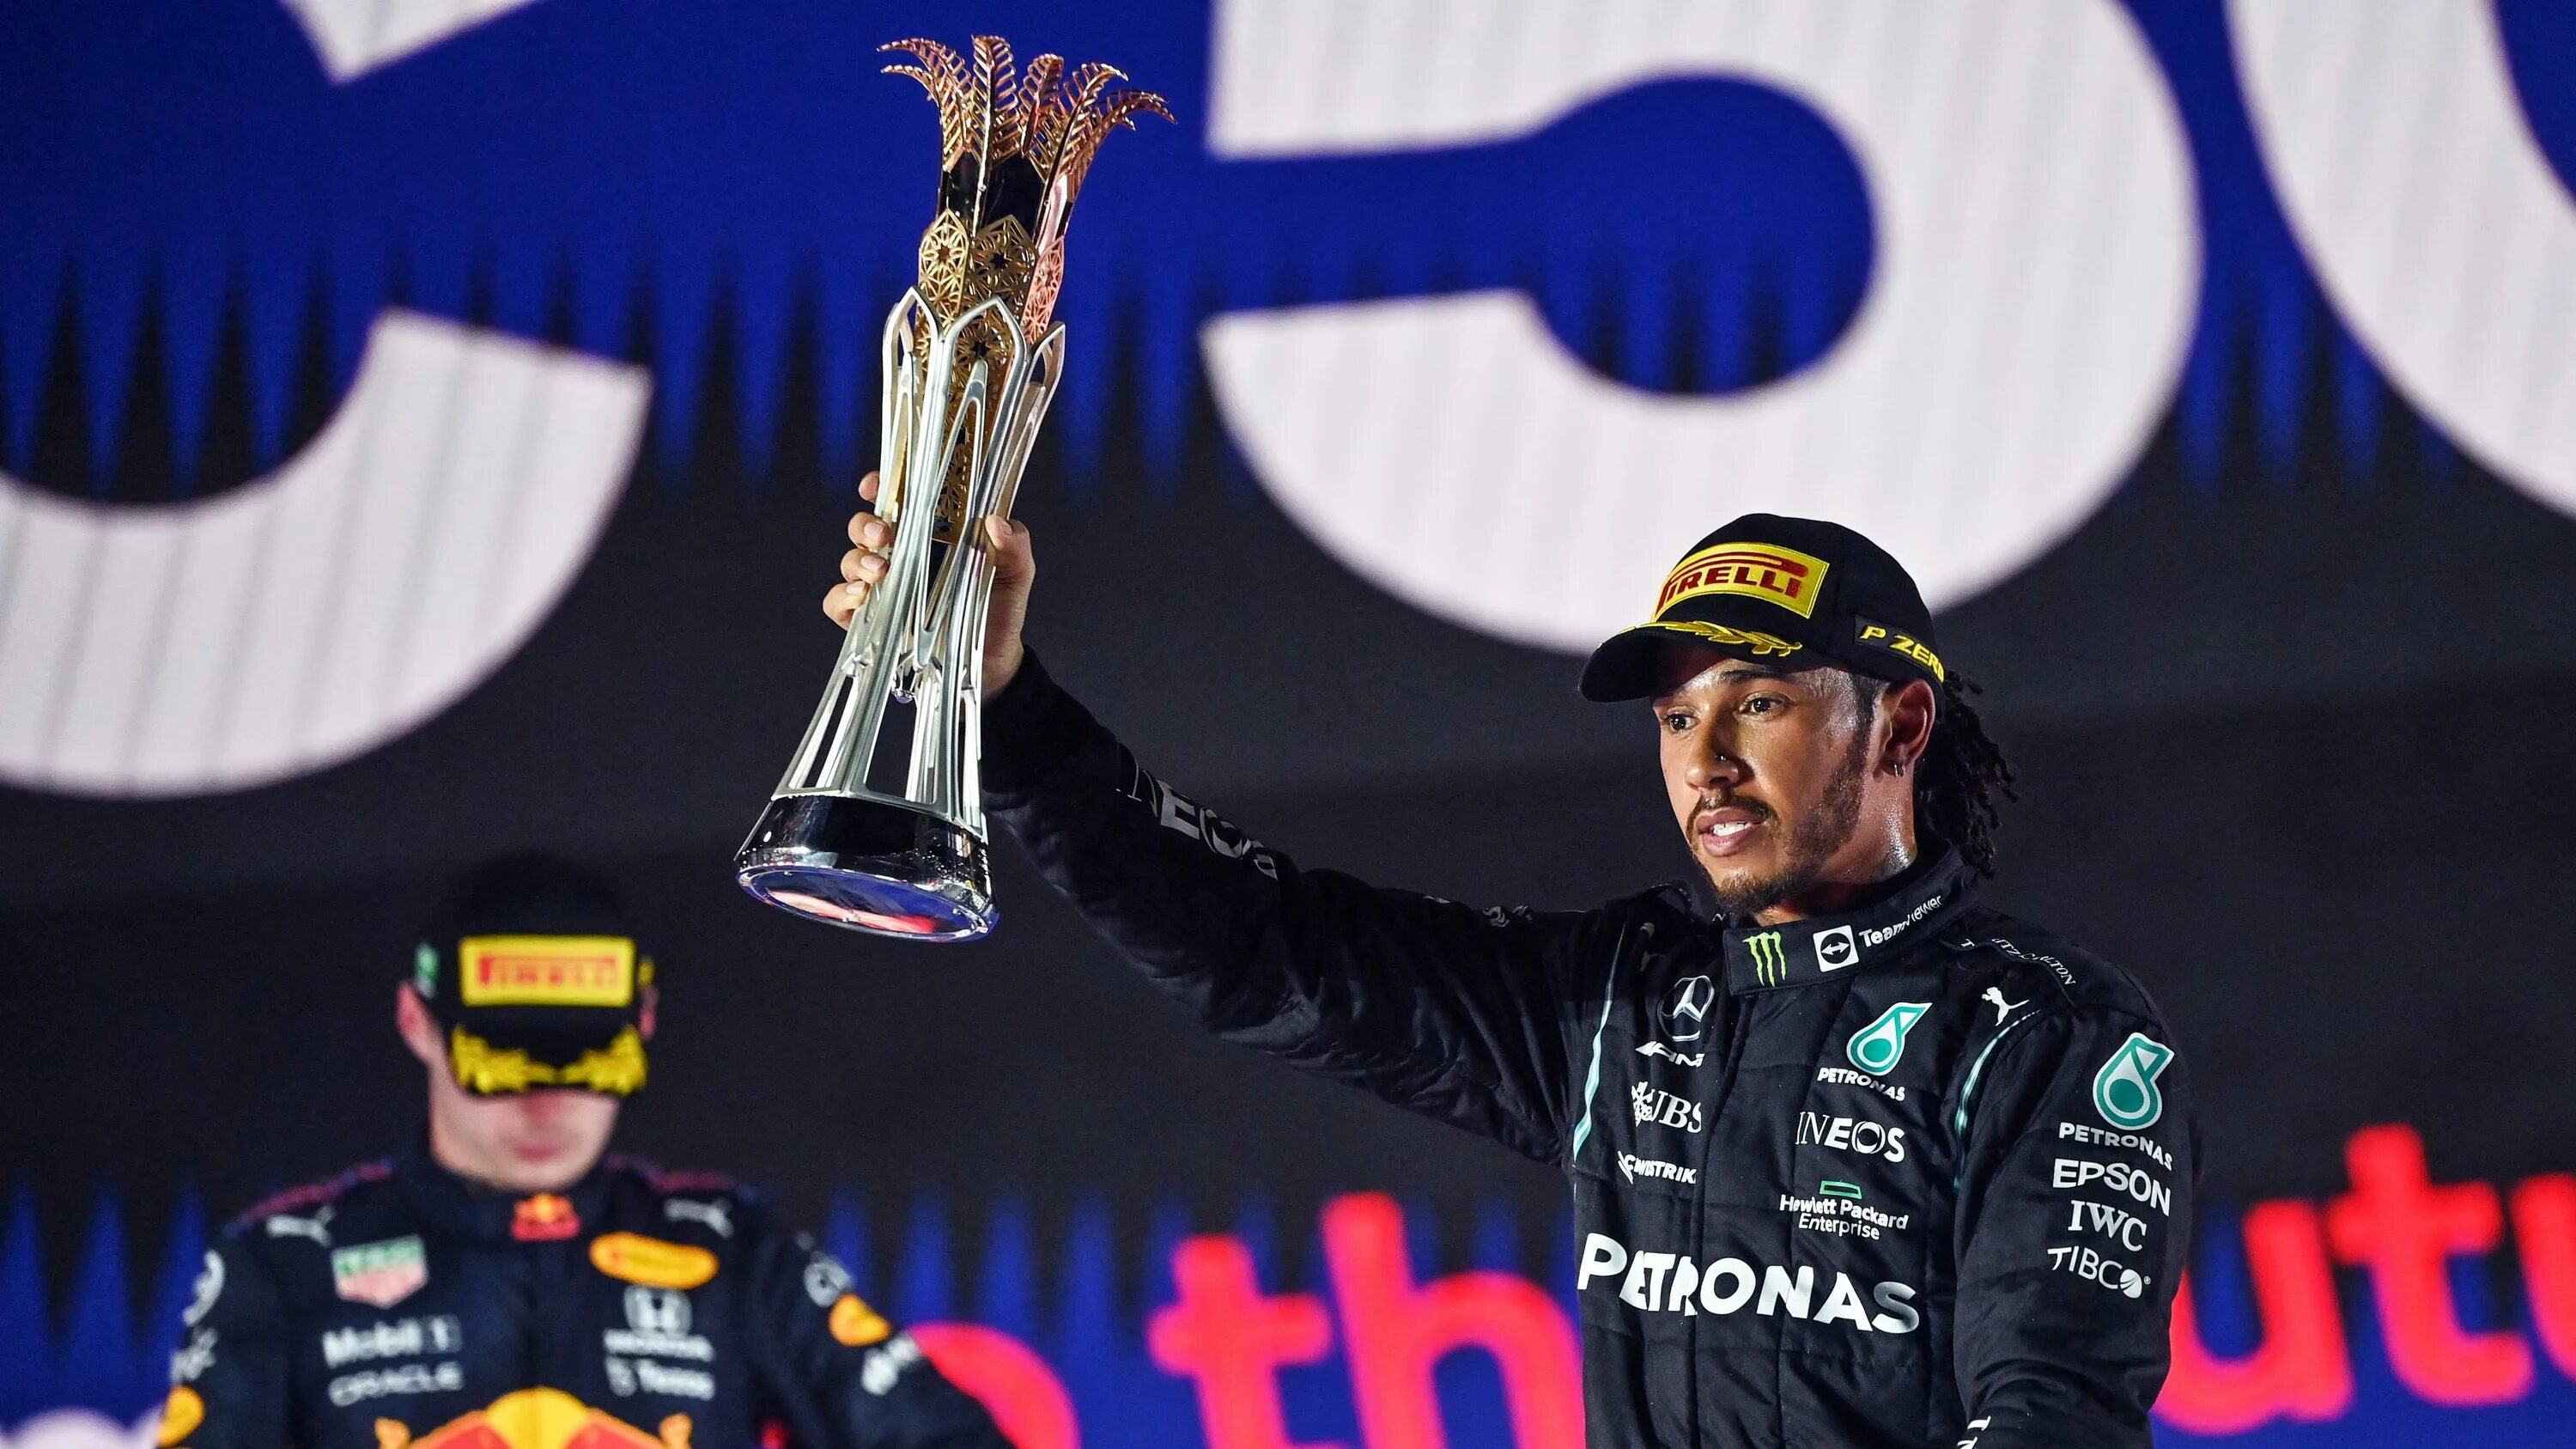 F1 саудовская аравия. Льюис Хэмилтон с Кубком. Трасса Саудовской Аравии формула 1. Гонка в Джидде формула 1. Lewis Hamilton with Trophy.